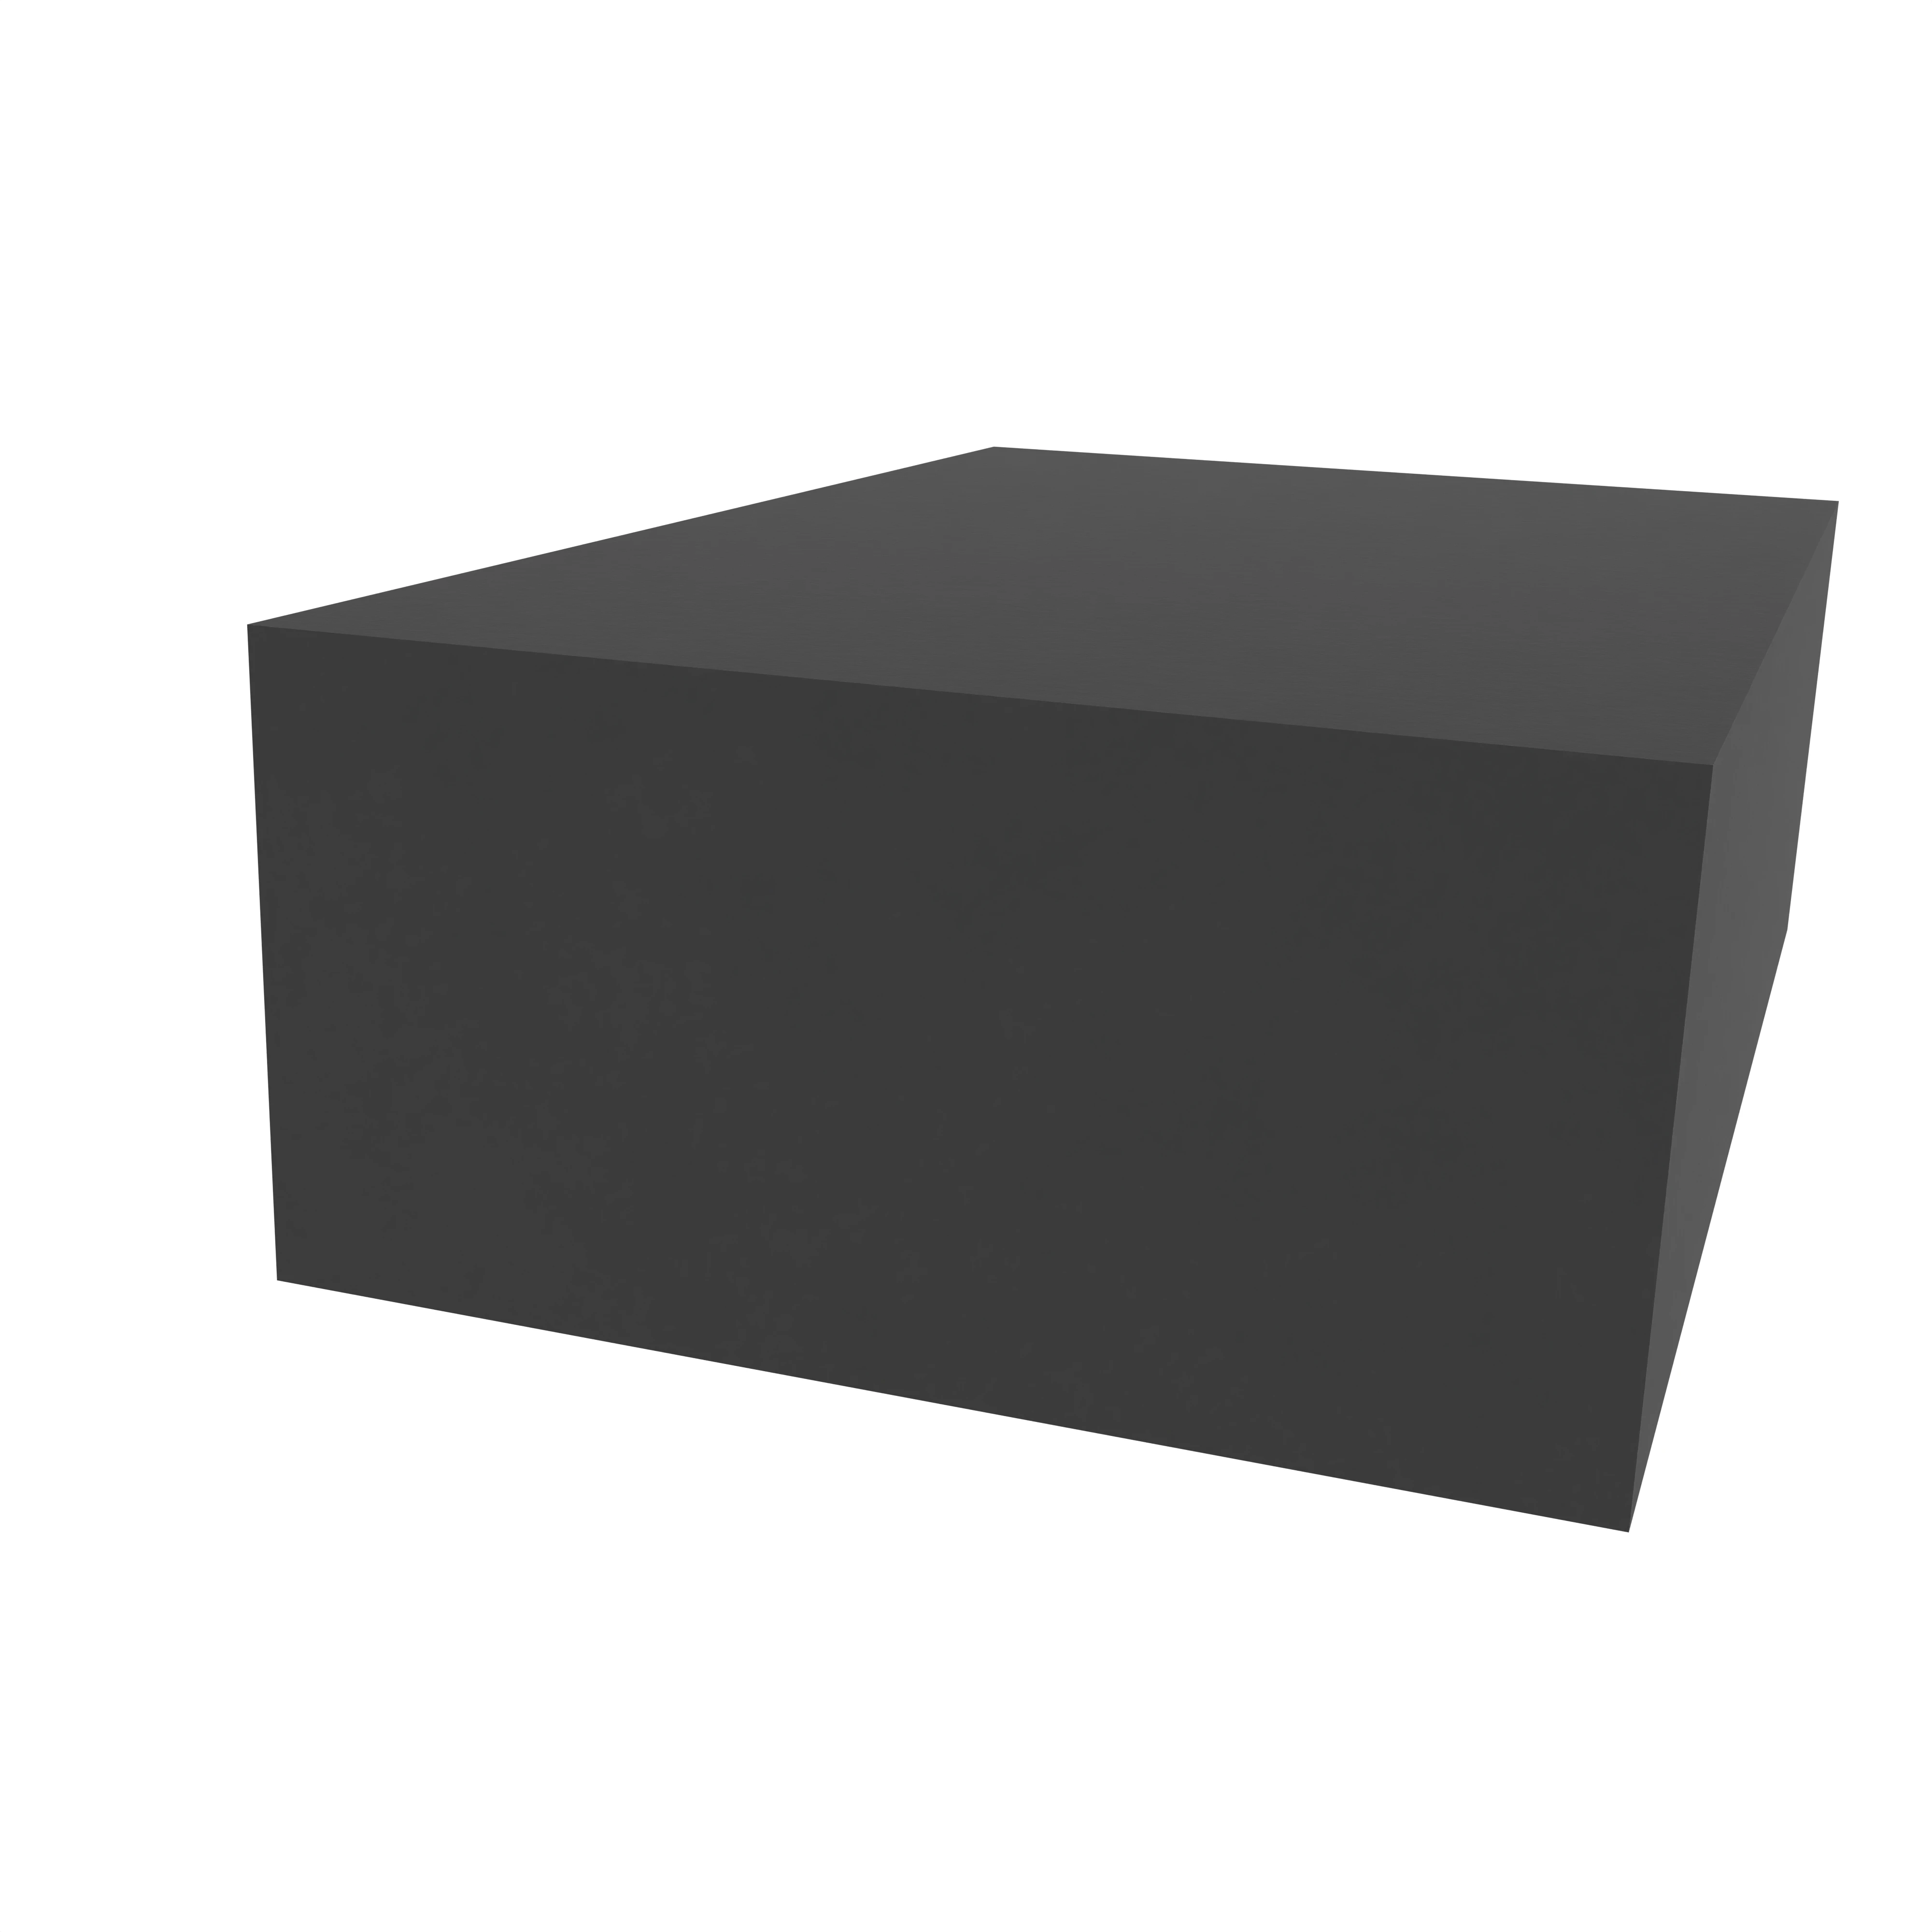 Moosgummidichtung vierkant | 40 mm Breite | Farbe: schwarz